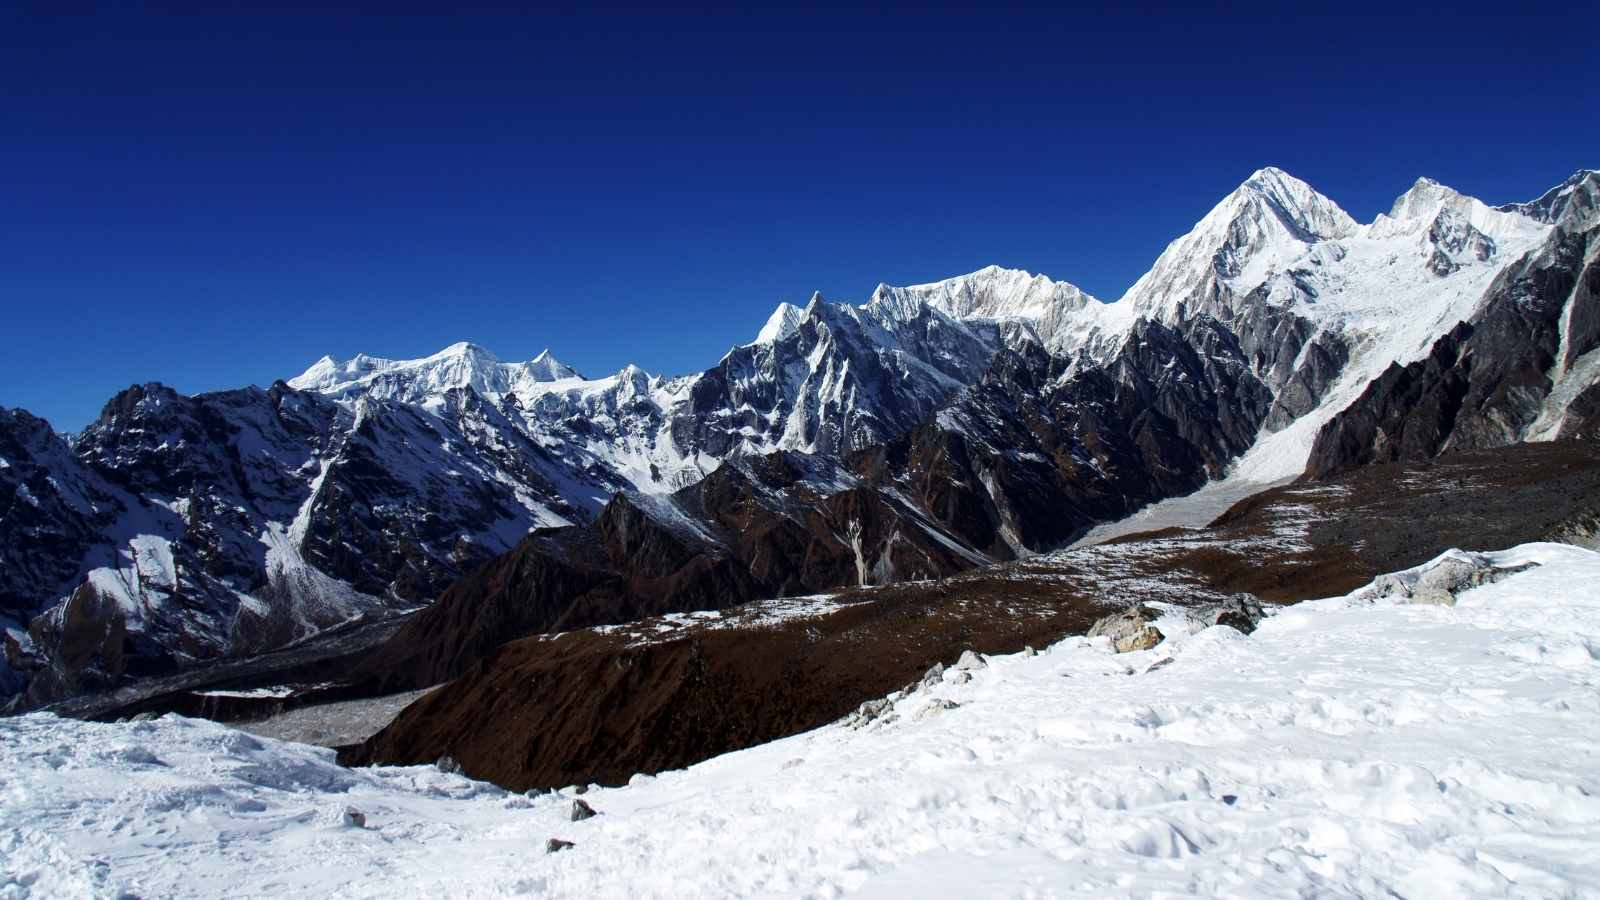 View from the pass Larkya La, Himalayas, Nepal